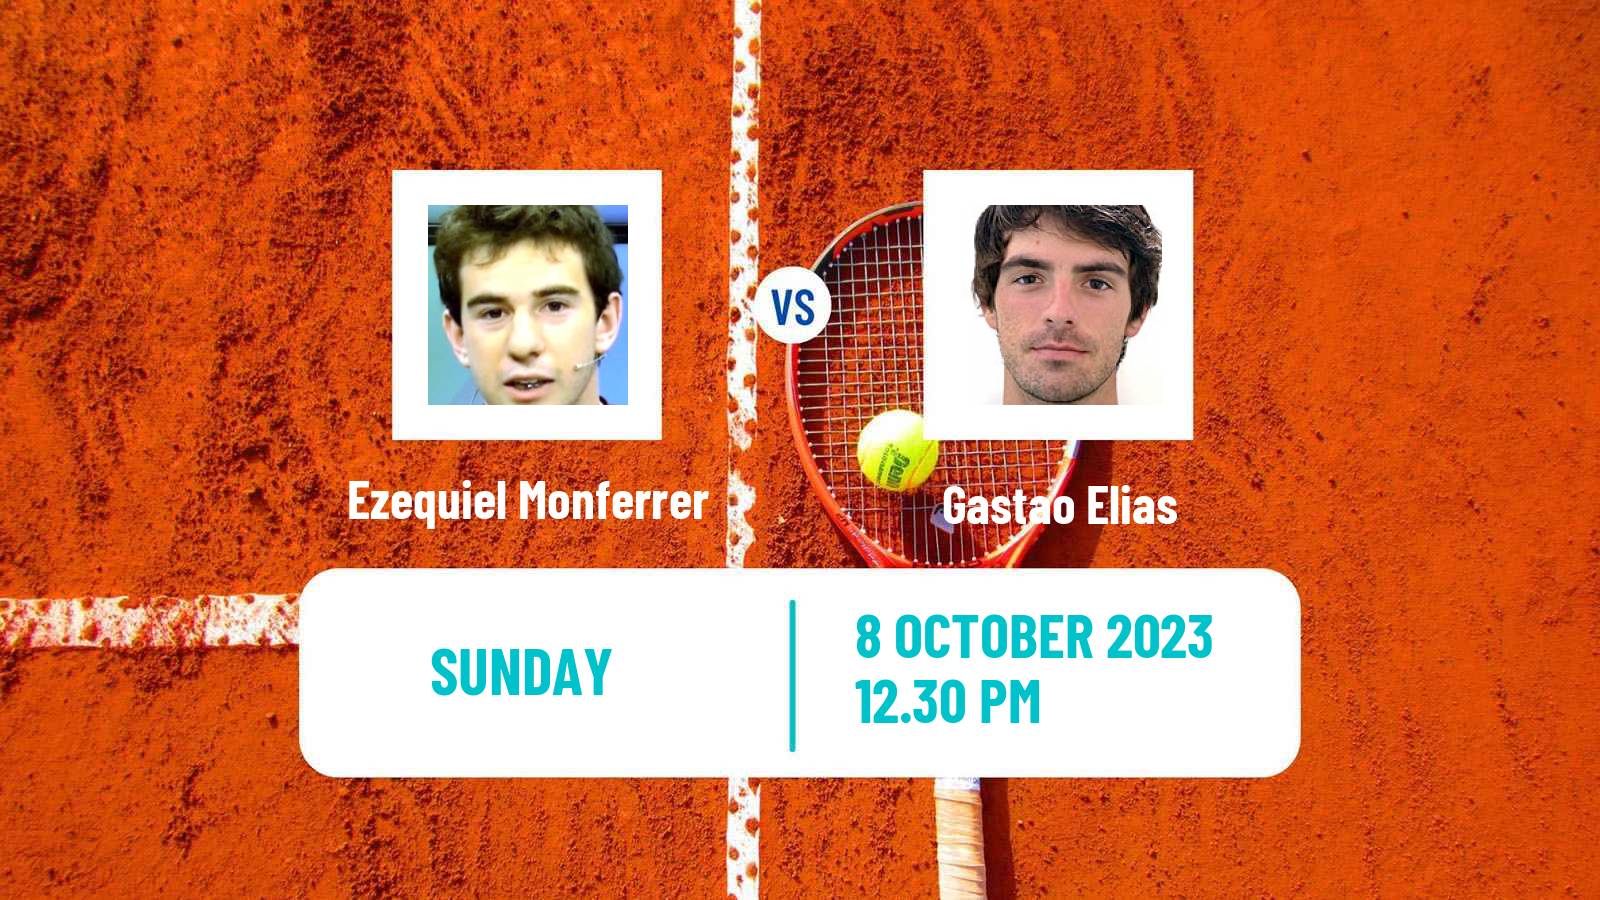 Tennis Buenos Aires 2 Challenger Men Ezequiel Monferrer - Gastao Elias